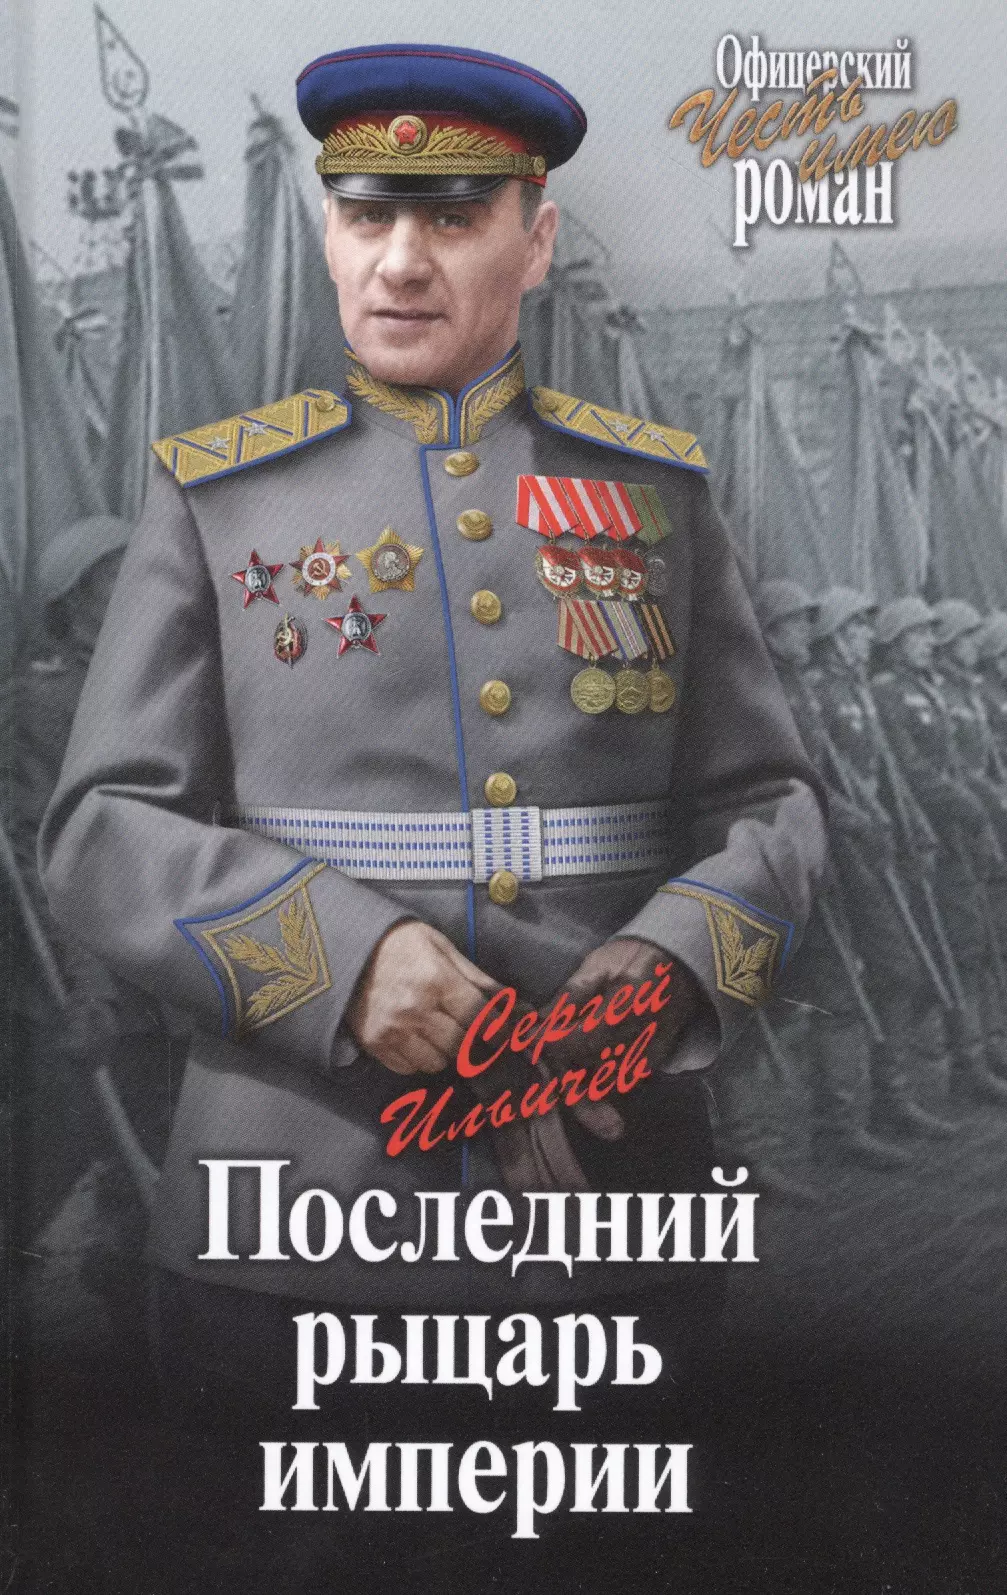 Ильичев Сергей Ильич - Последний рыцарь империи